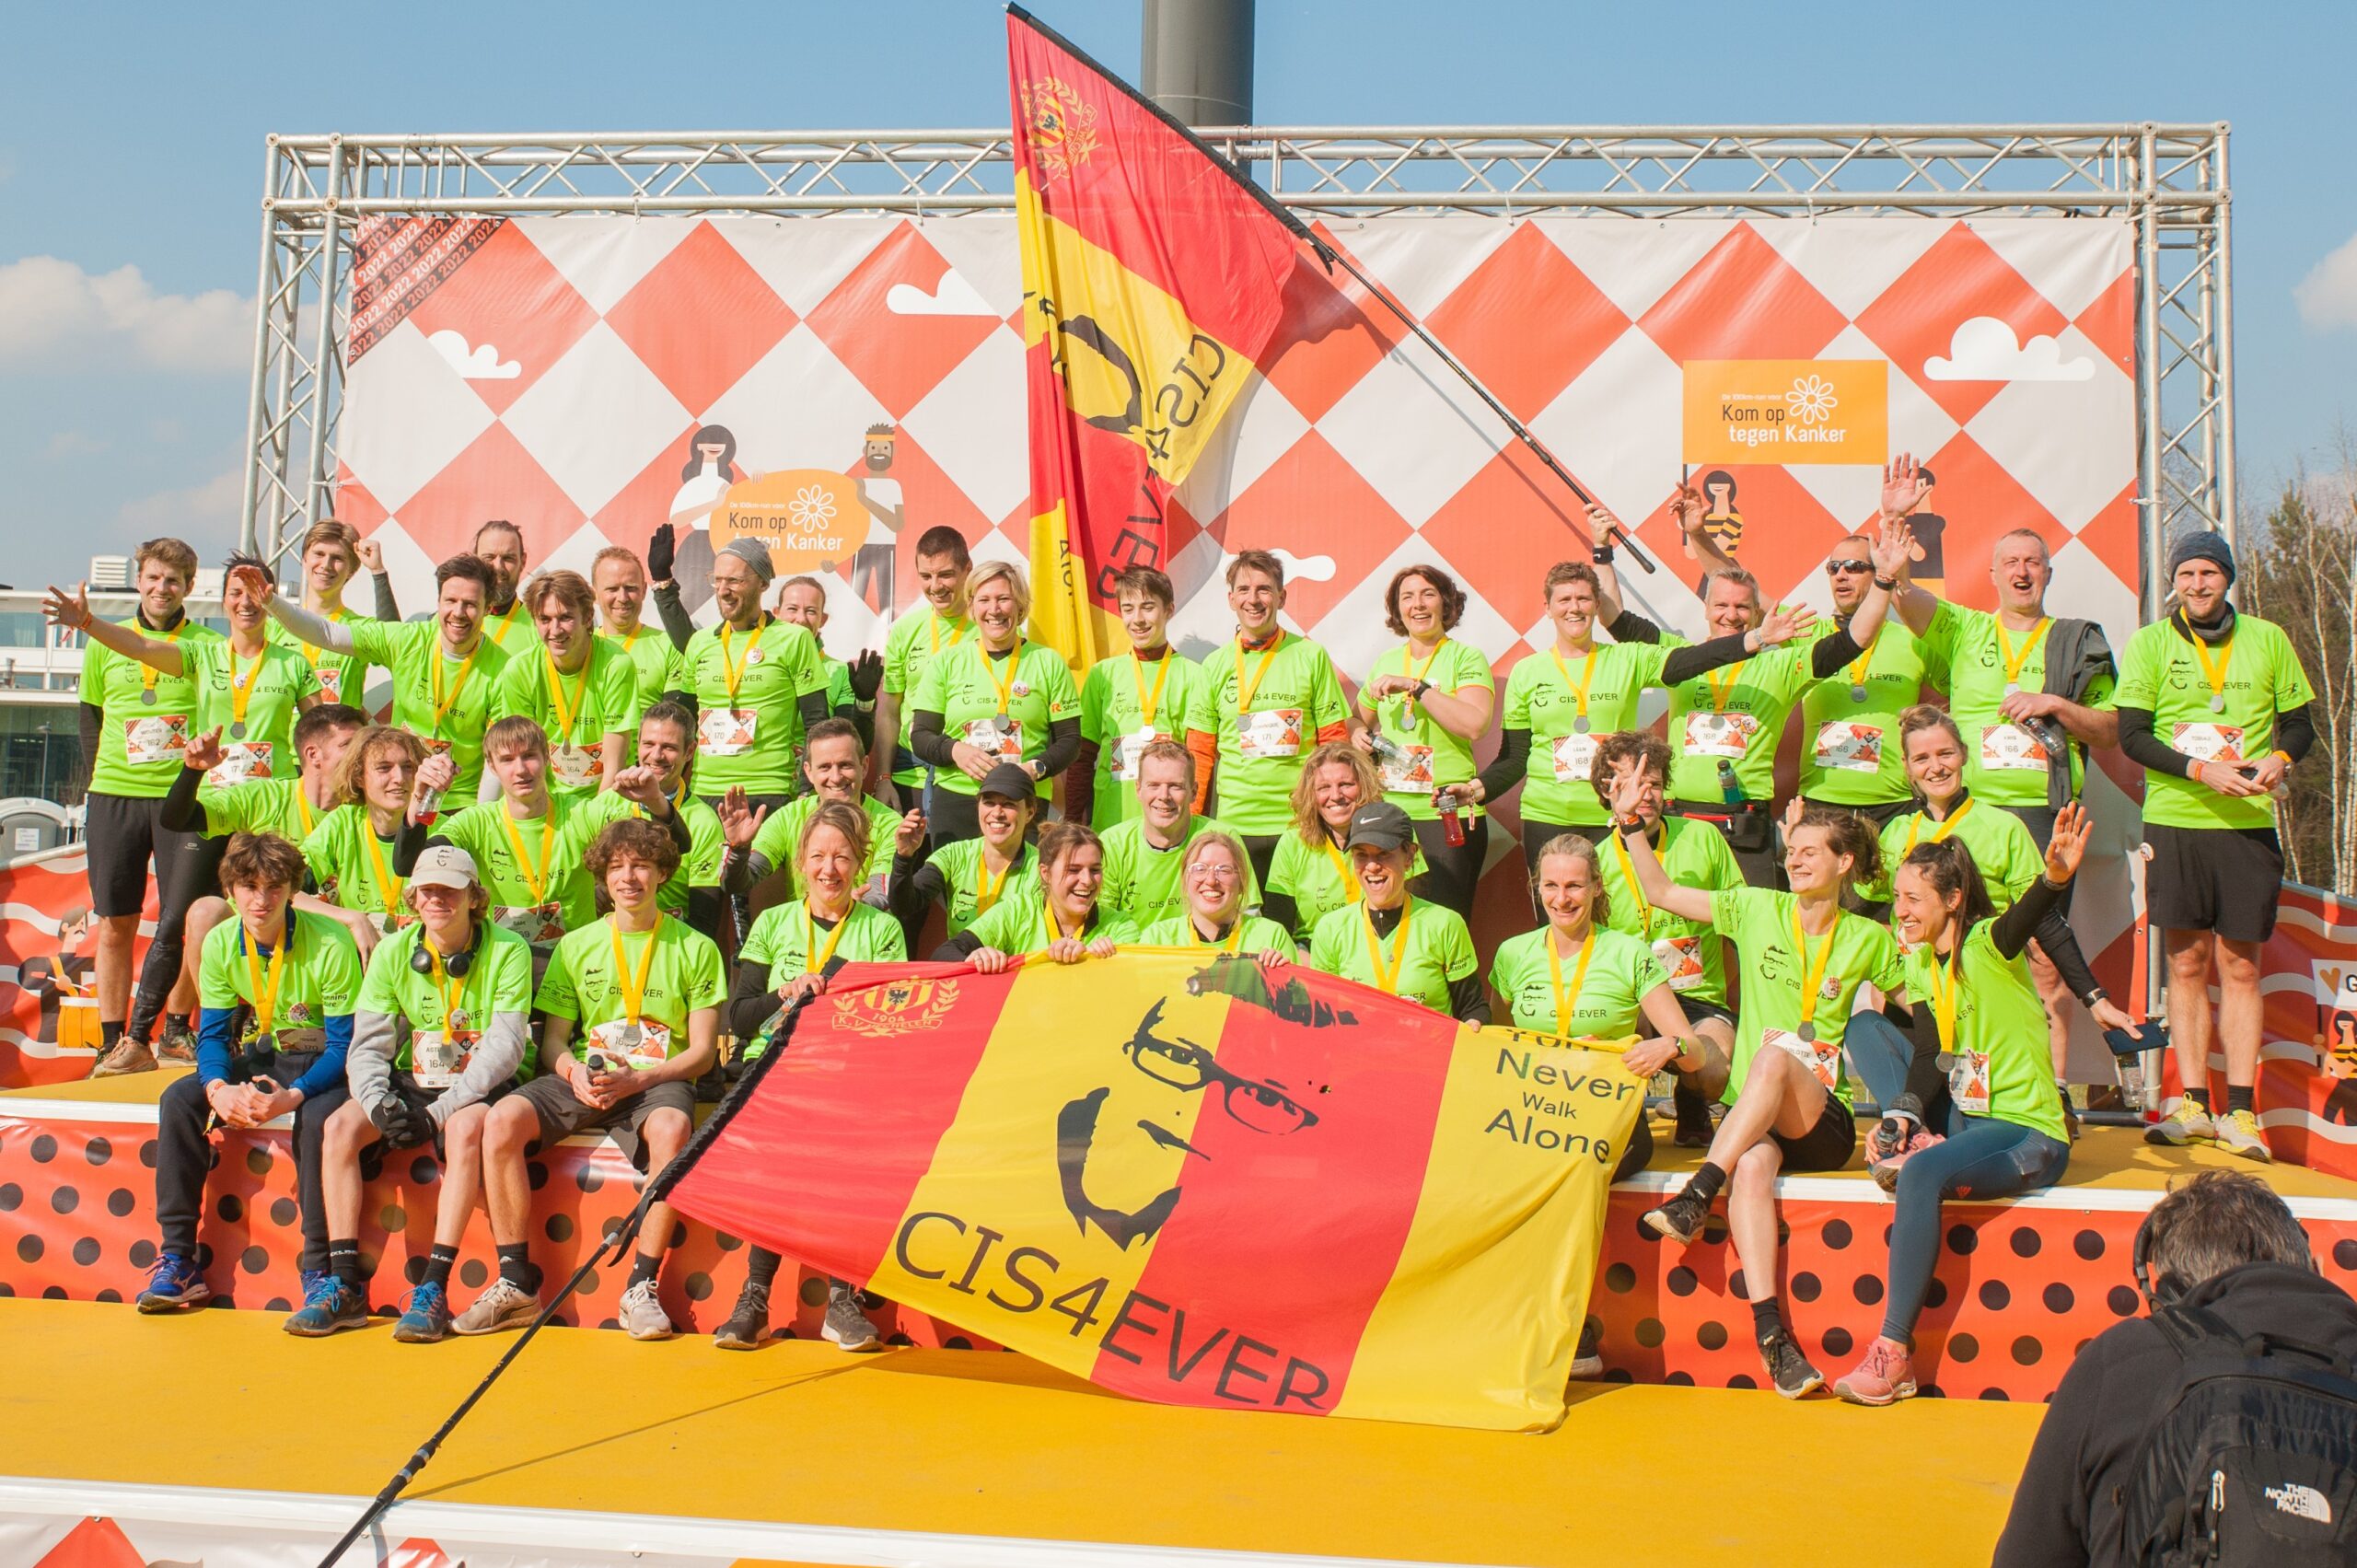 Vijf jaar fietsen en lopen door Cis4ever levert meer dan 200.000 euro aan Kom op tegen Kanker